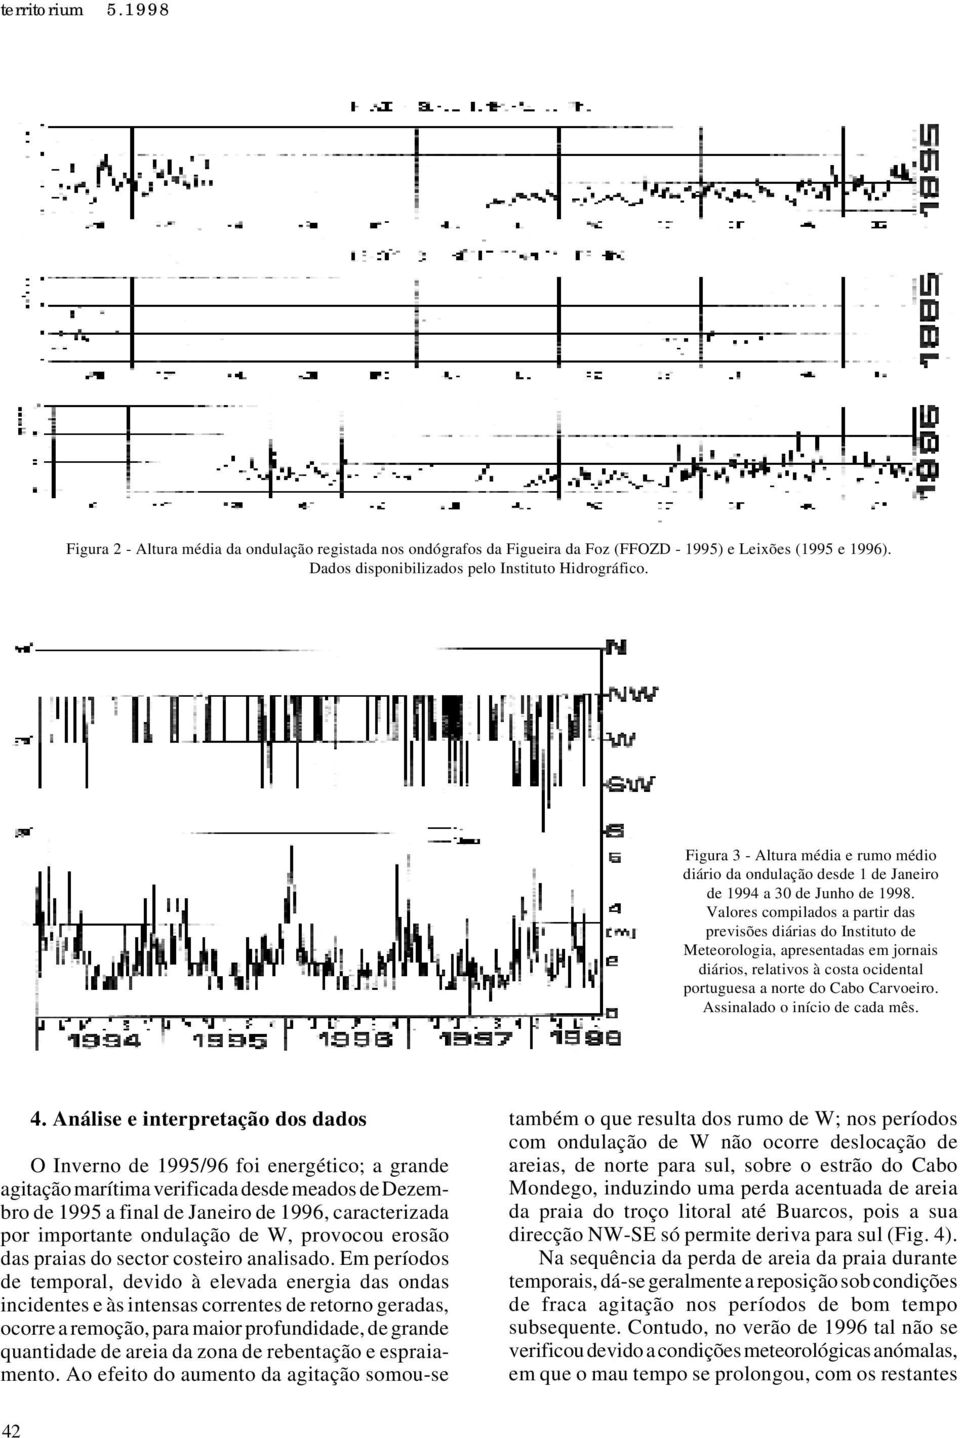 Valores compilados a partir das previsões diárias do Instituto de Meteorologia, apresentadas em jornais diários, relativos à costa ocidental portuguesa a norte do Cabo Carvoeiro.